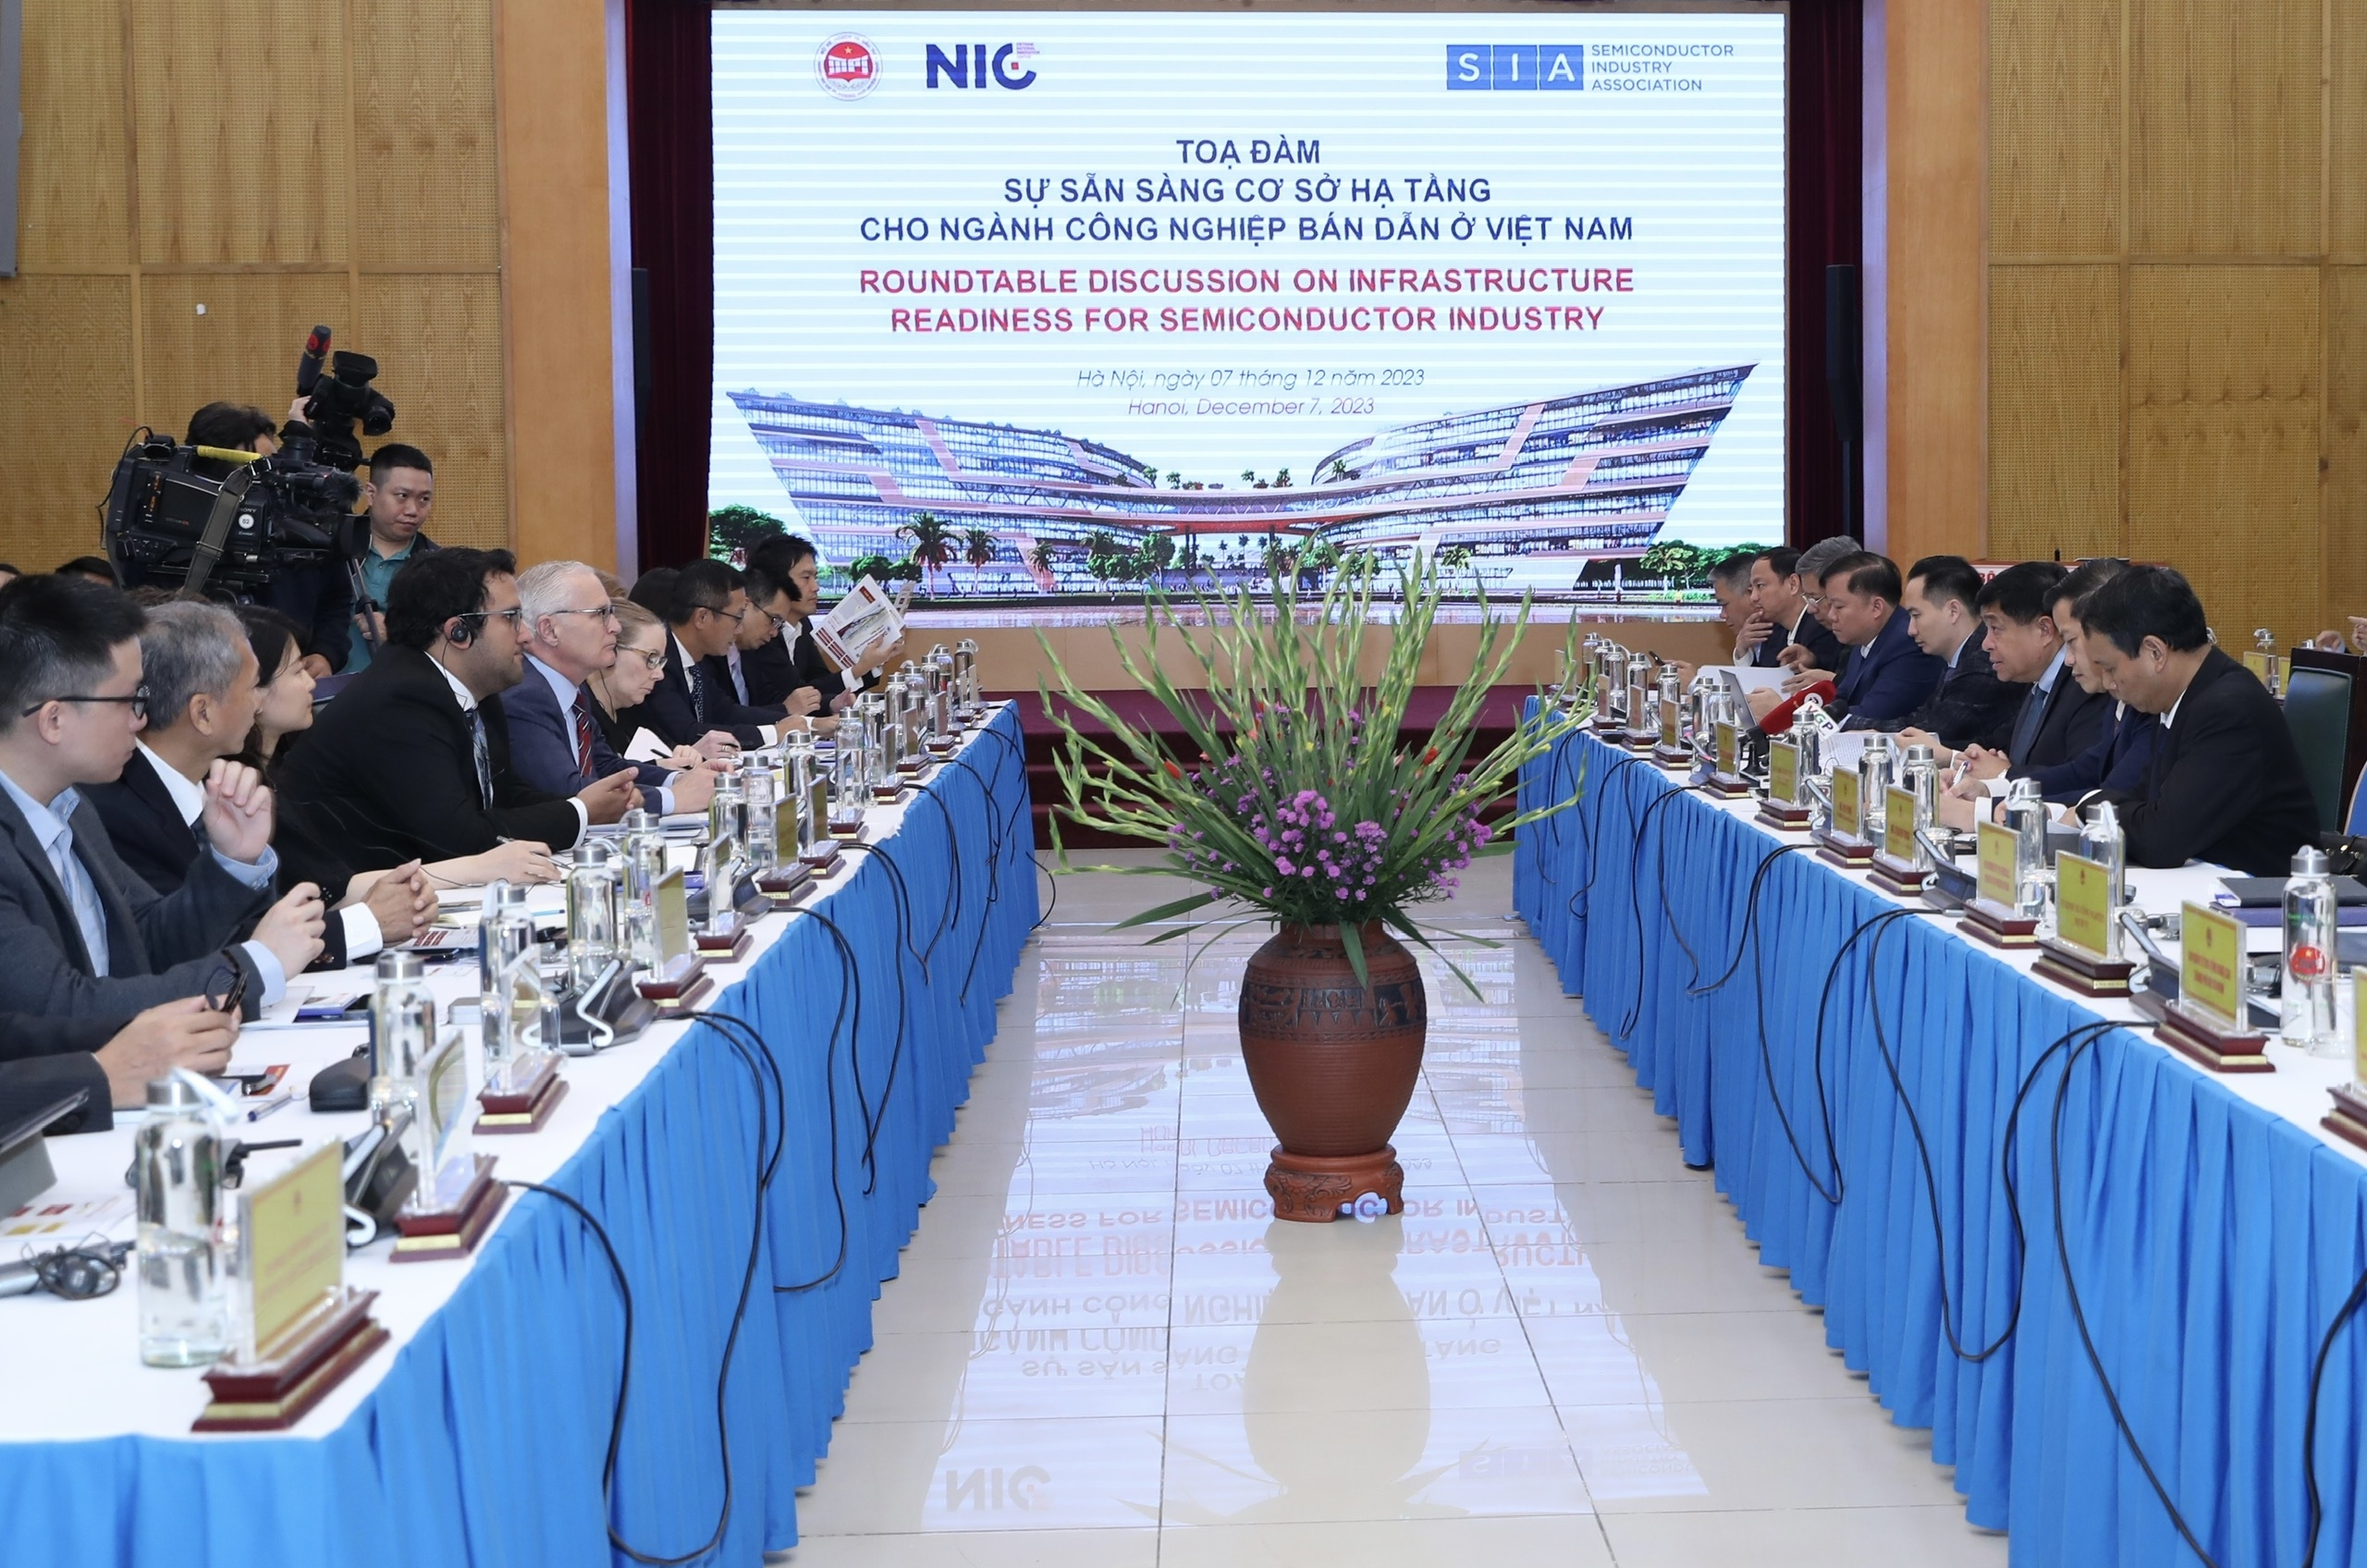 Việt Nam đã chuẩn bị những điều kiện tốt nhất về hạ tầng, đáp ứng được các yêu cầu của ngành công nghiệp bán dẫn